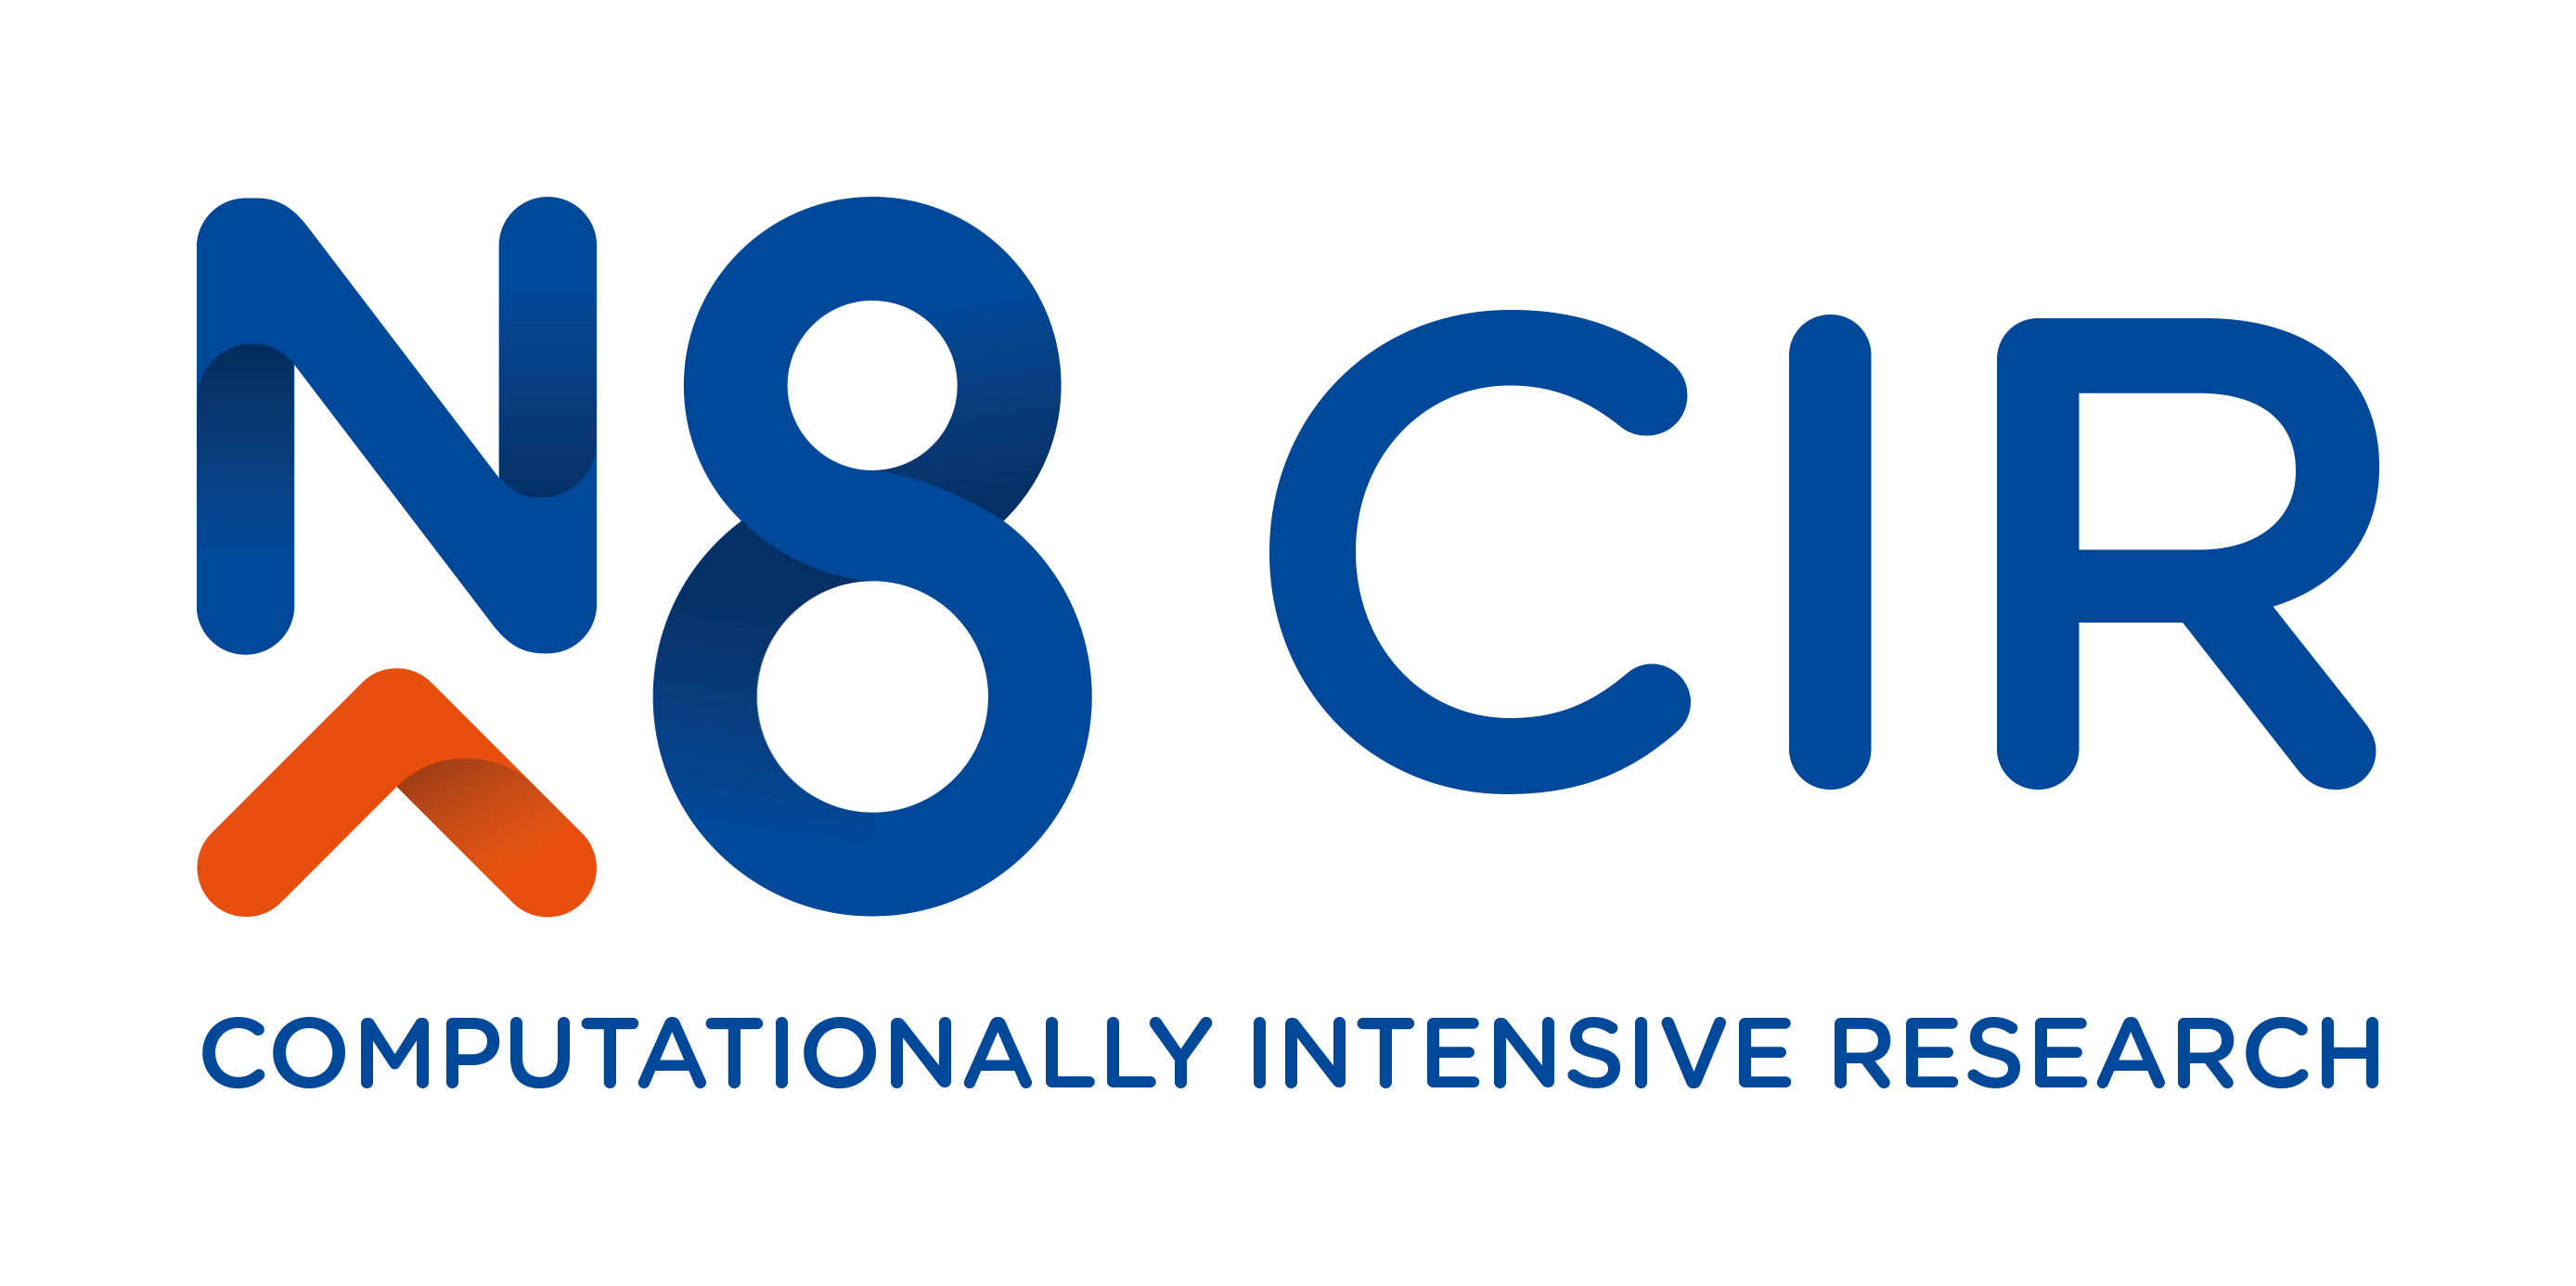 N8 CIR logo